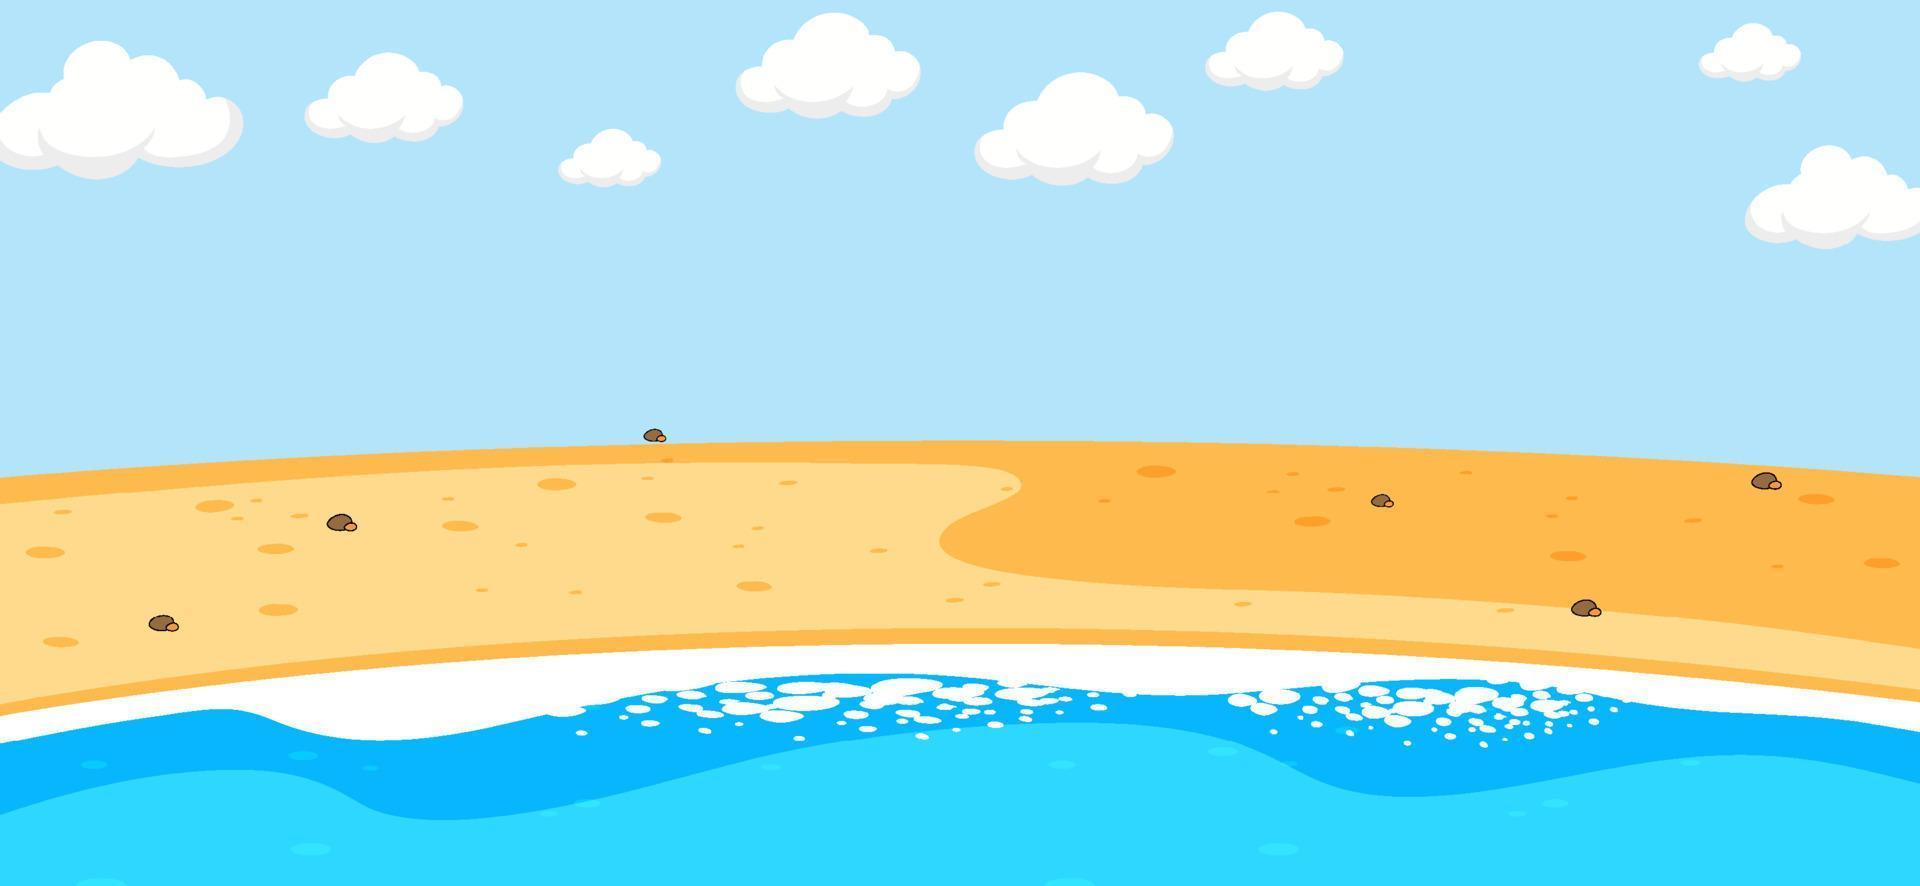 scena di spiaggia vuota con cielo vuoto in stile cartone animato vettore